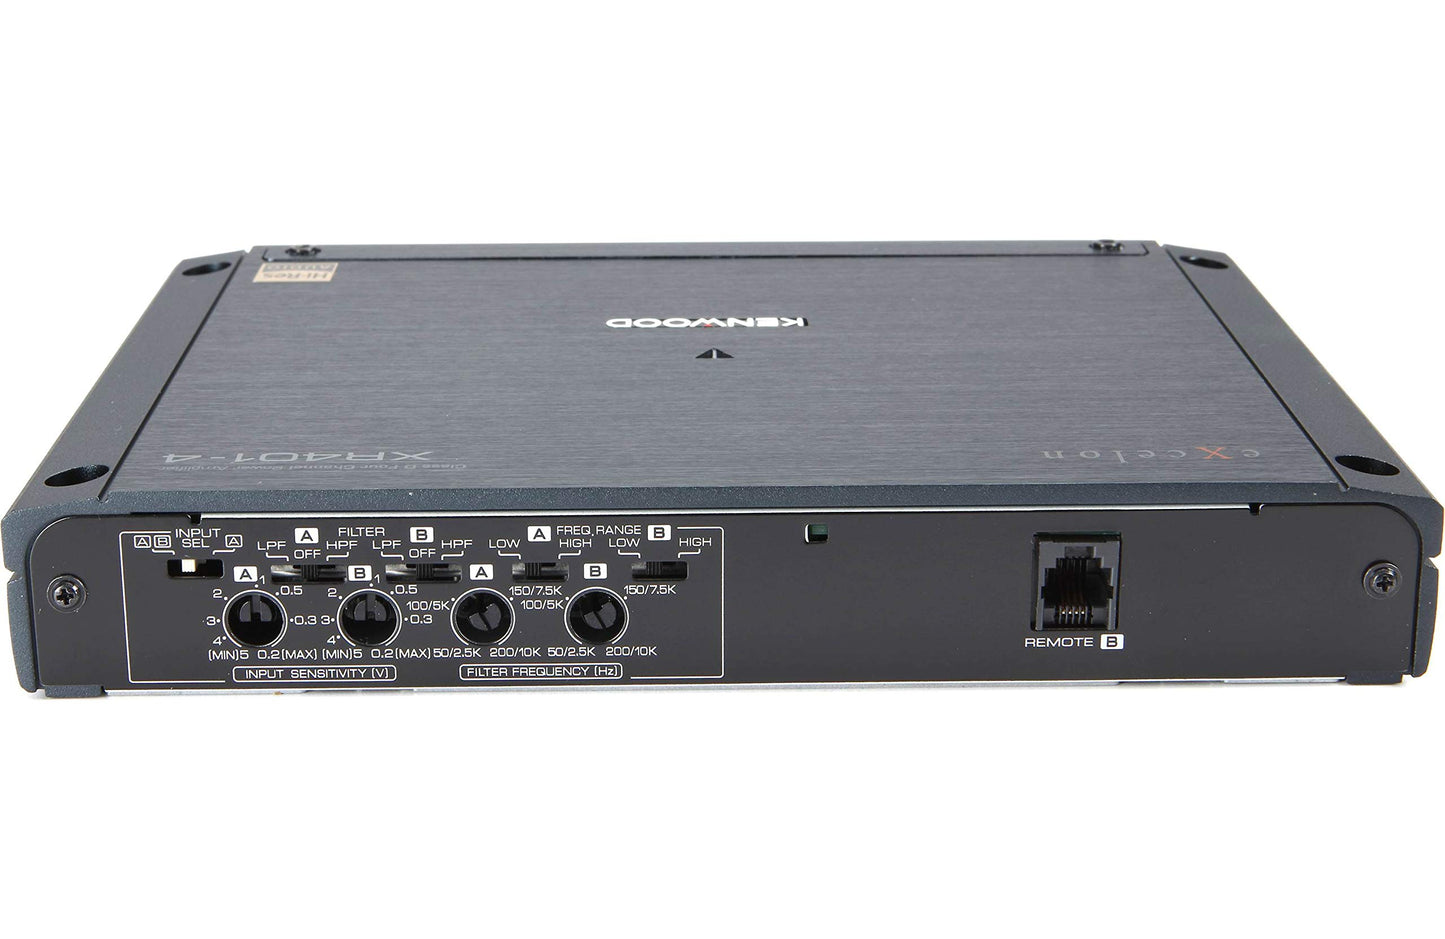 Kenwood XR401-4 eXcelon 400-Watt 4-Channel Amplifier